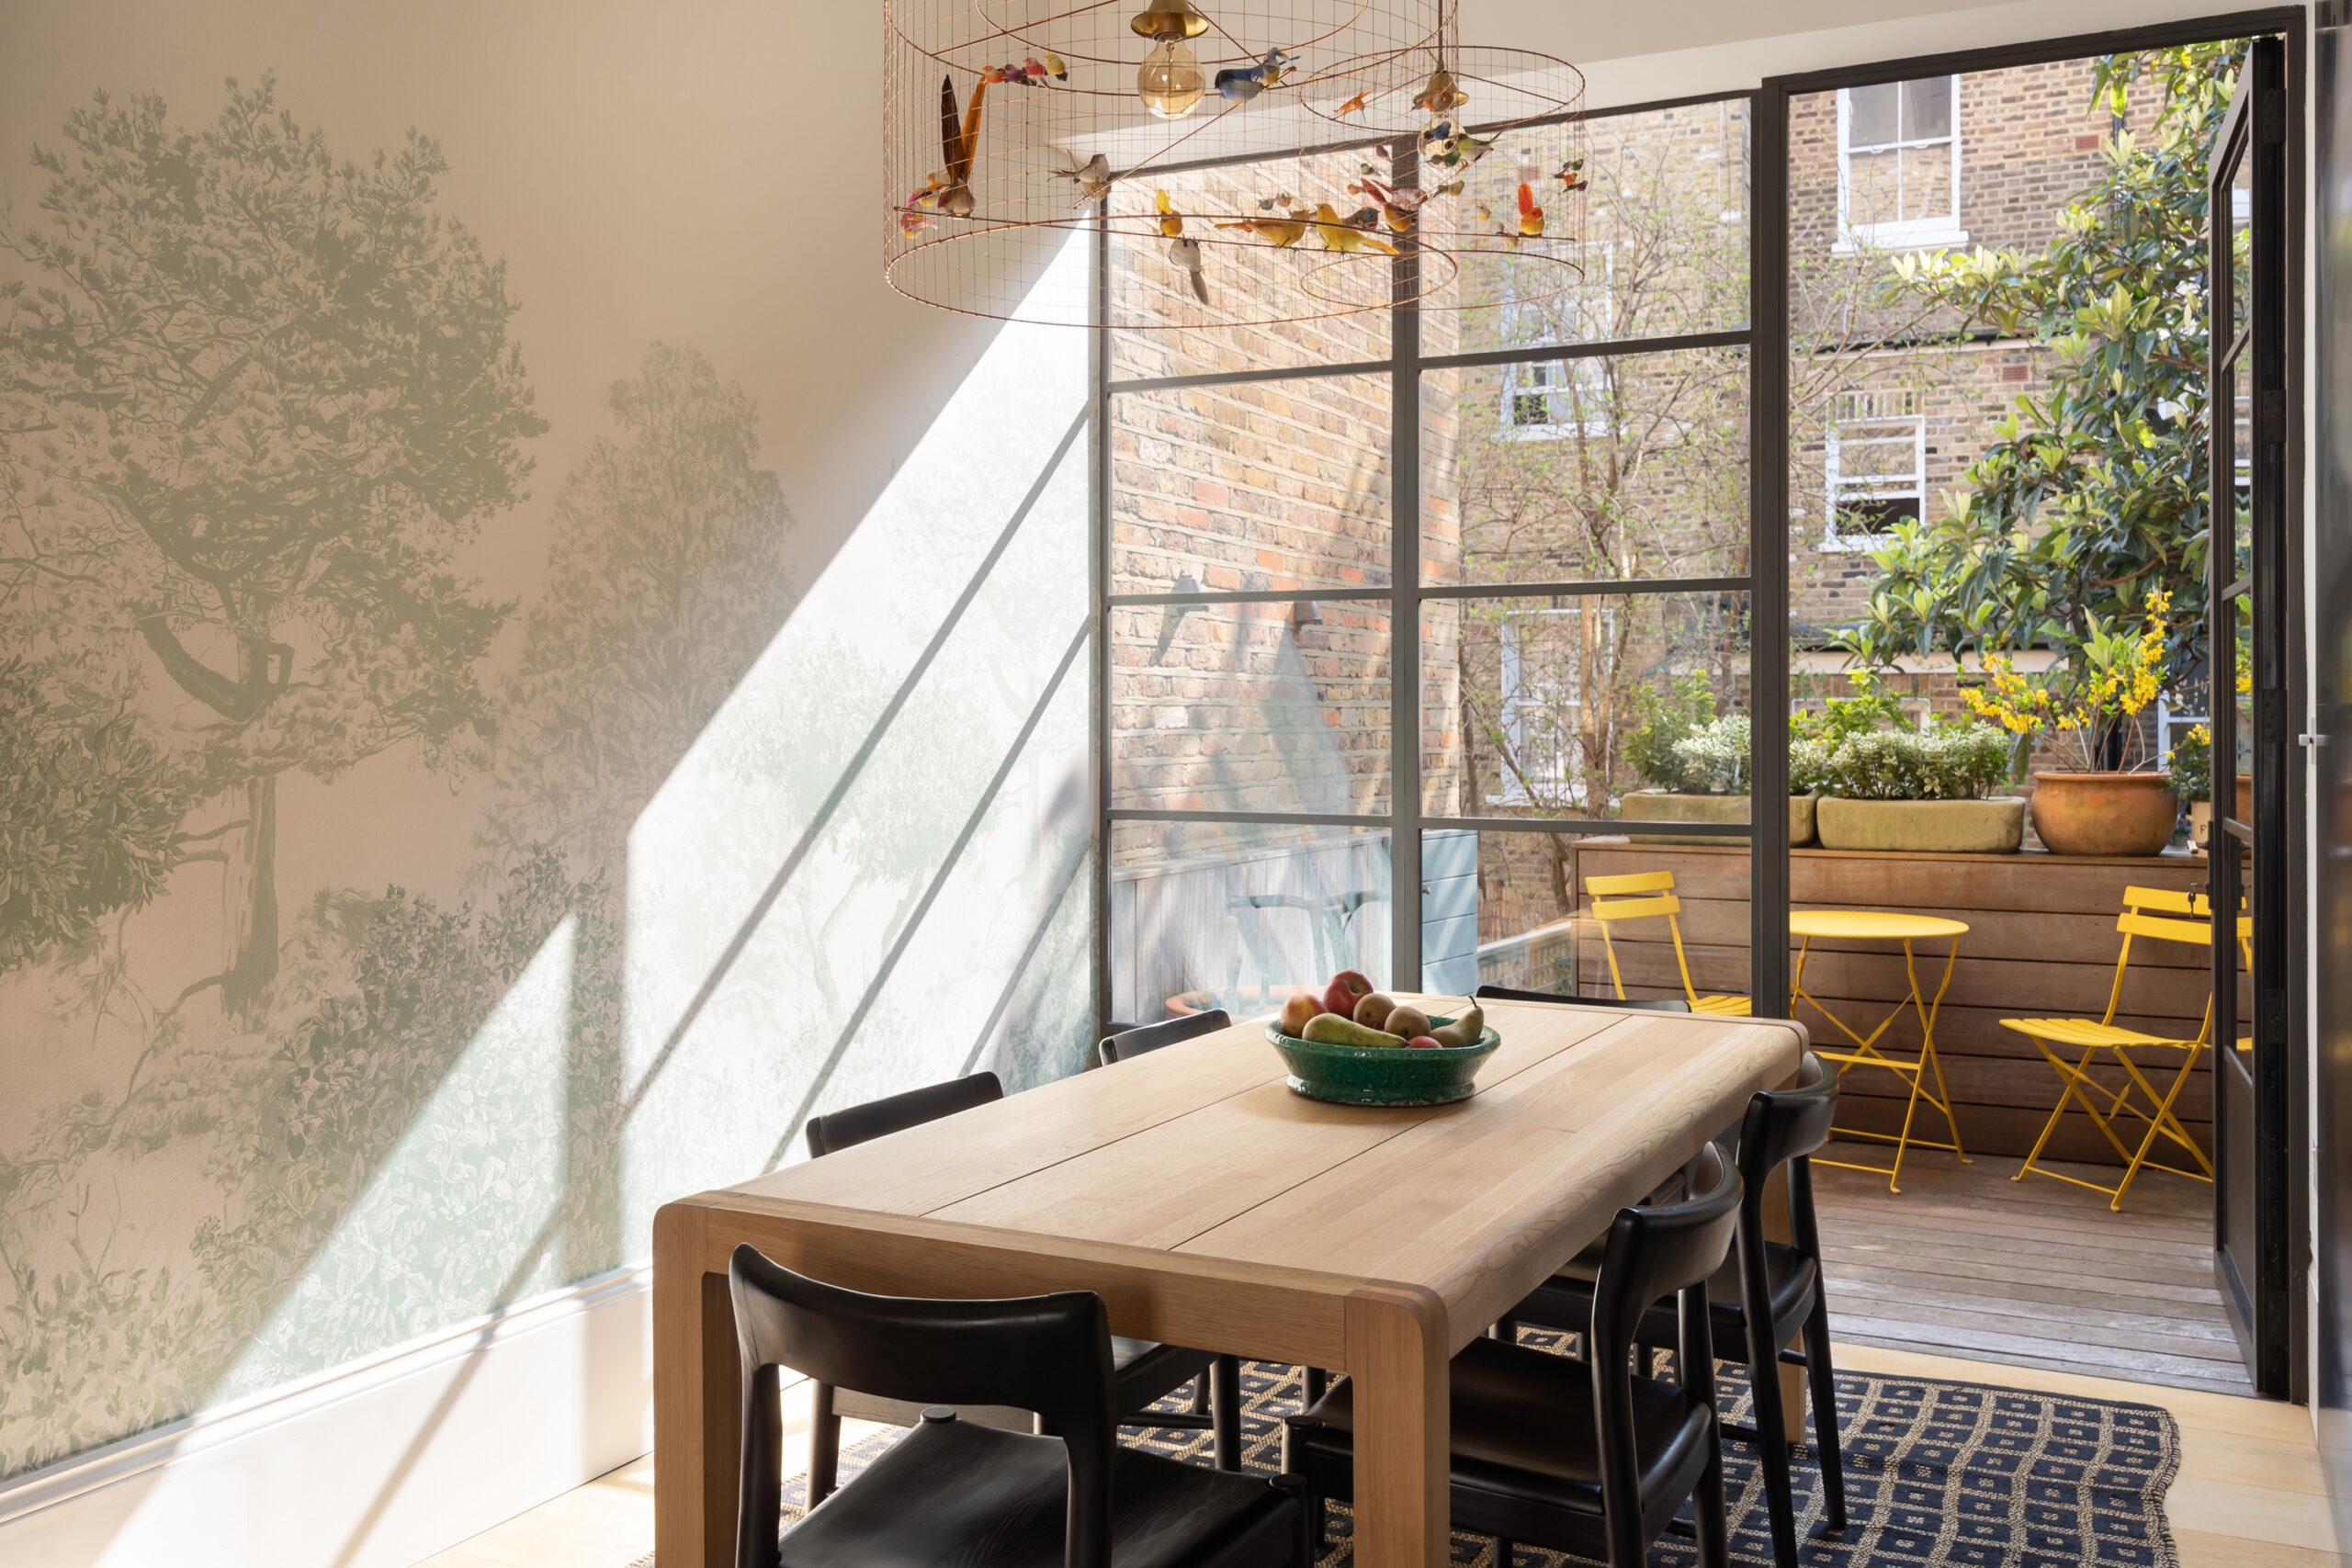 Dining room at Ladbroke Crescent Notting hill